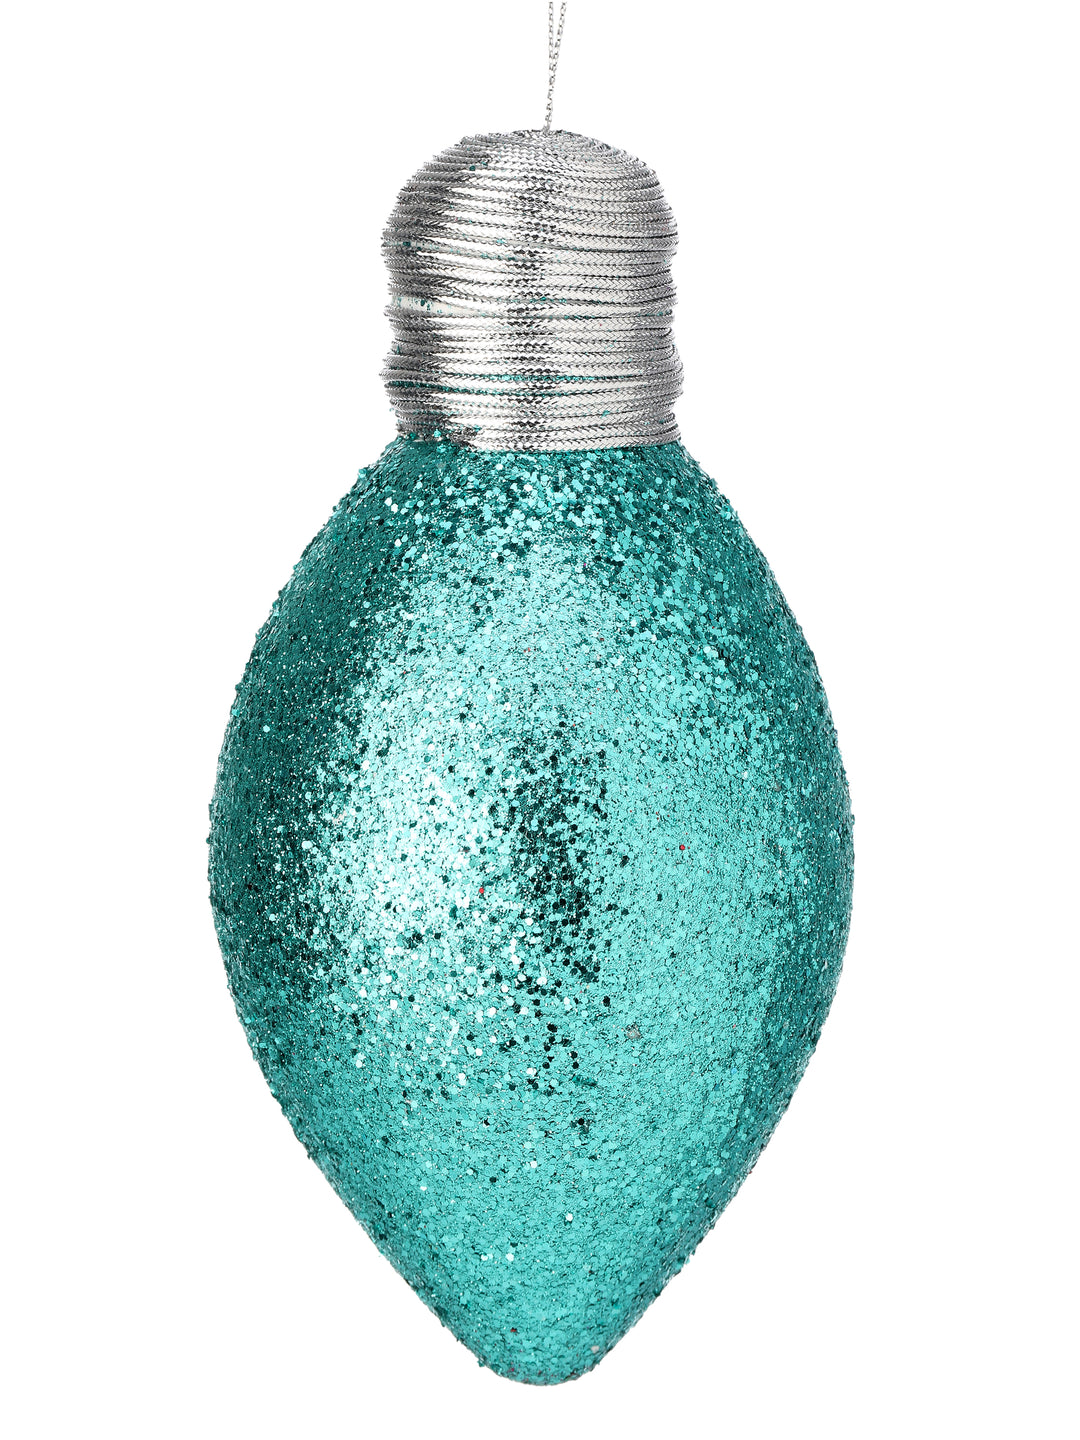 (2) Regency 7" Glitter Light Bulb Ornament in Teal Blue - set of 2